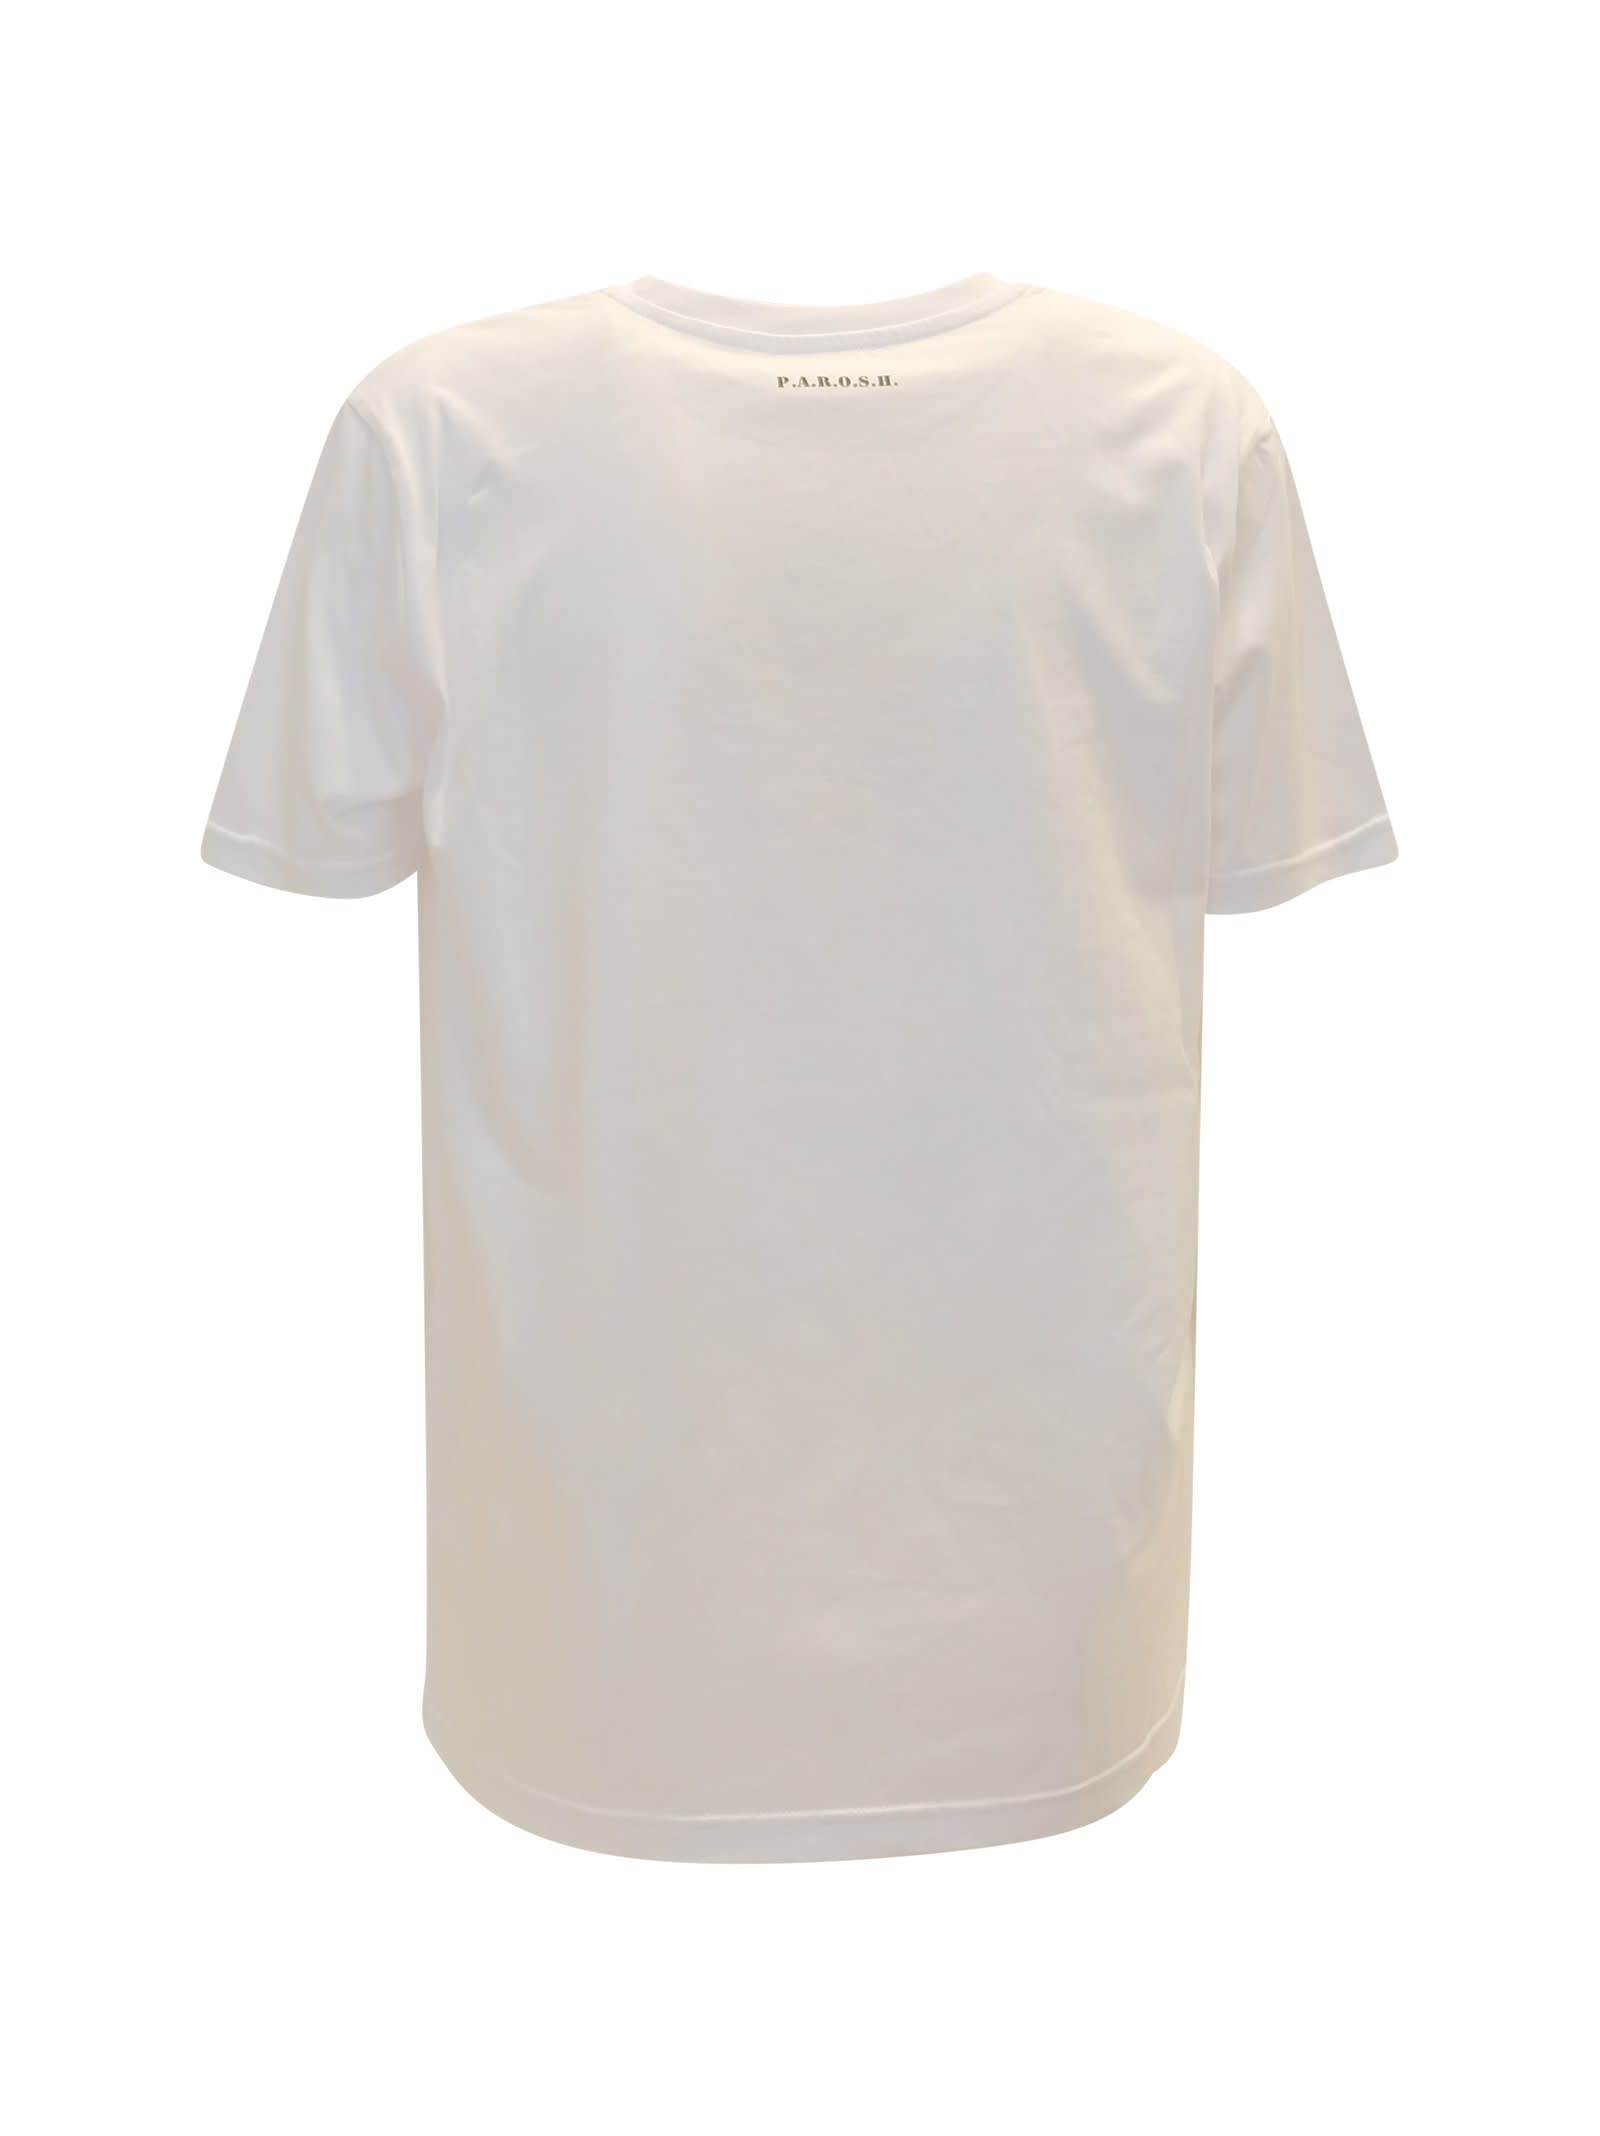 Shop P.a.r.o.s.h Parosh Culmine White Cotton T-shirt